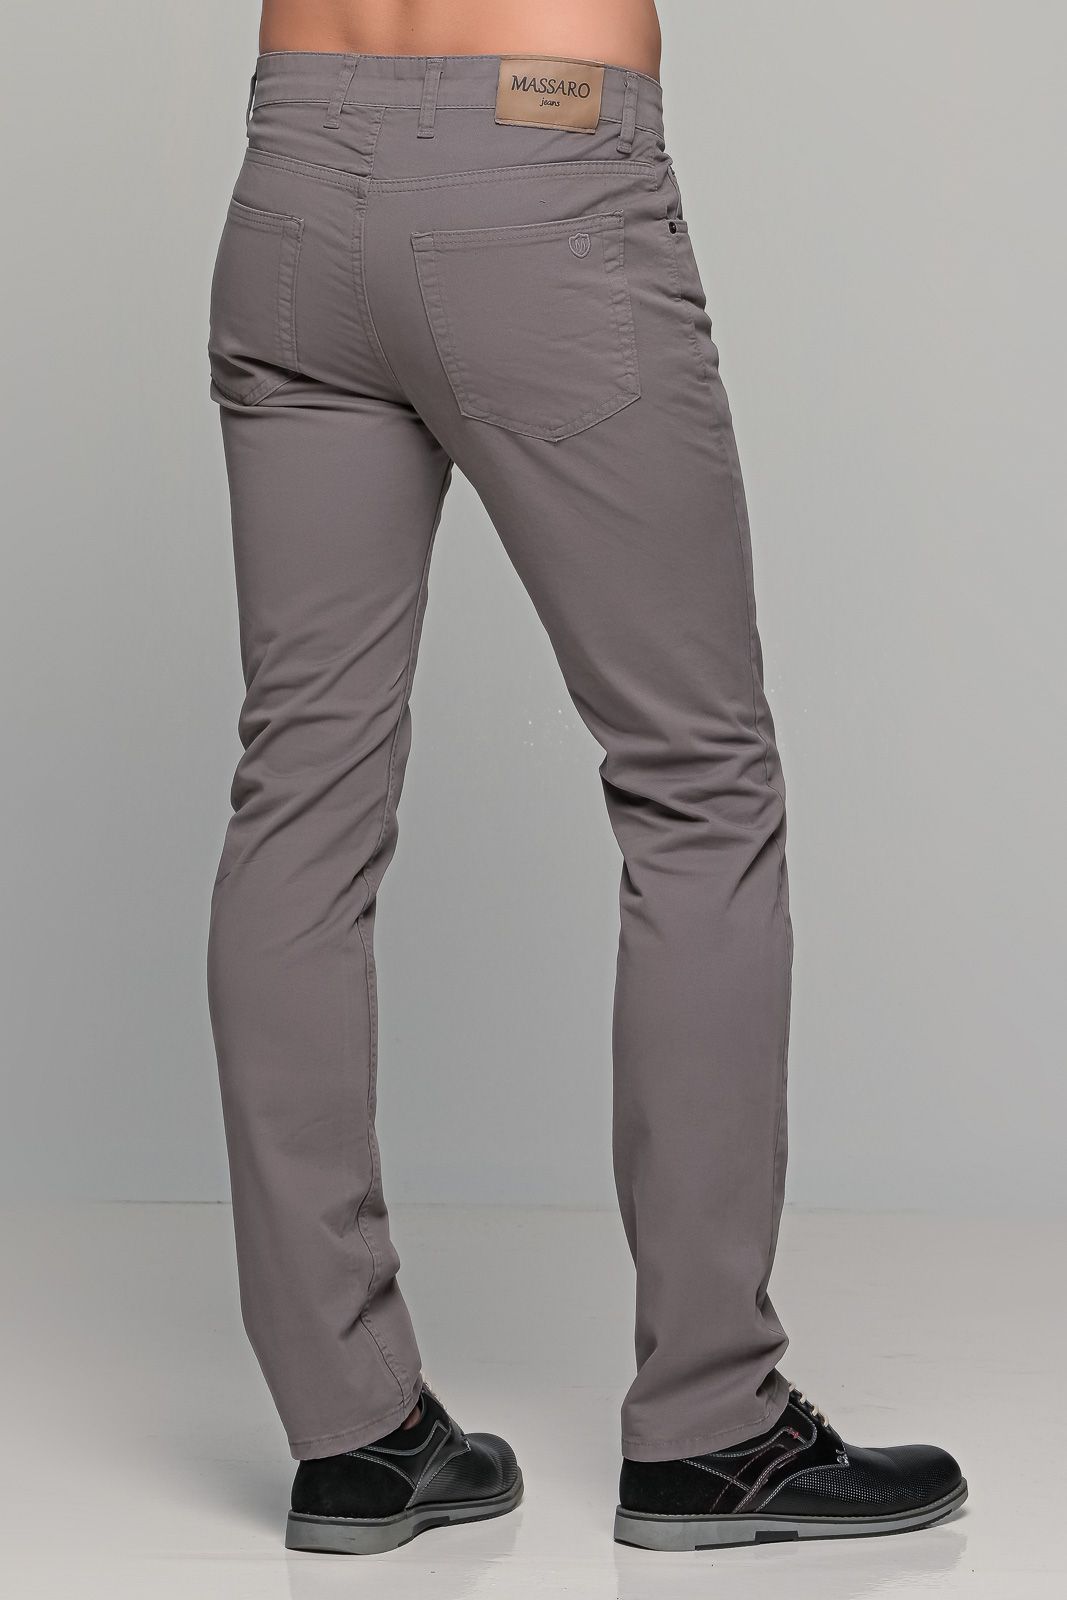 Χειμερινό ανδρικό παντελόνι πεντάτσεπο MASSARO γκρι - Straight fit